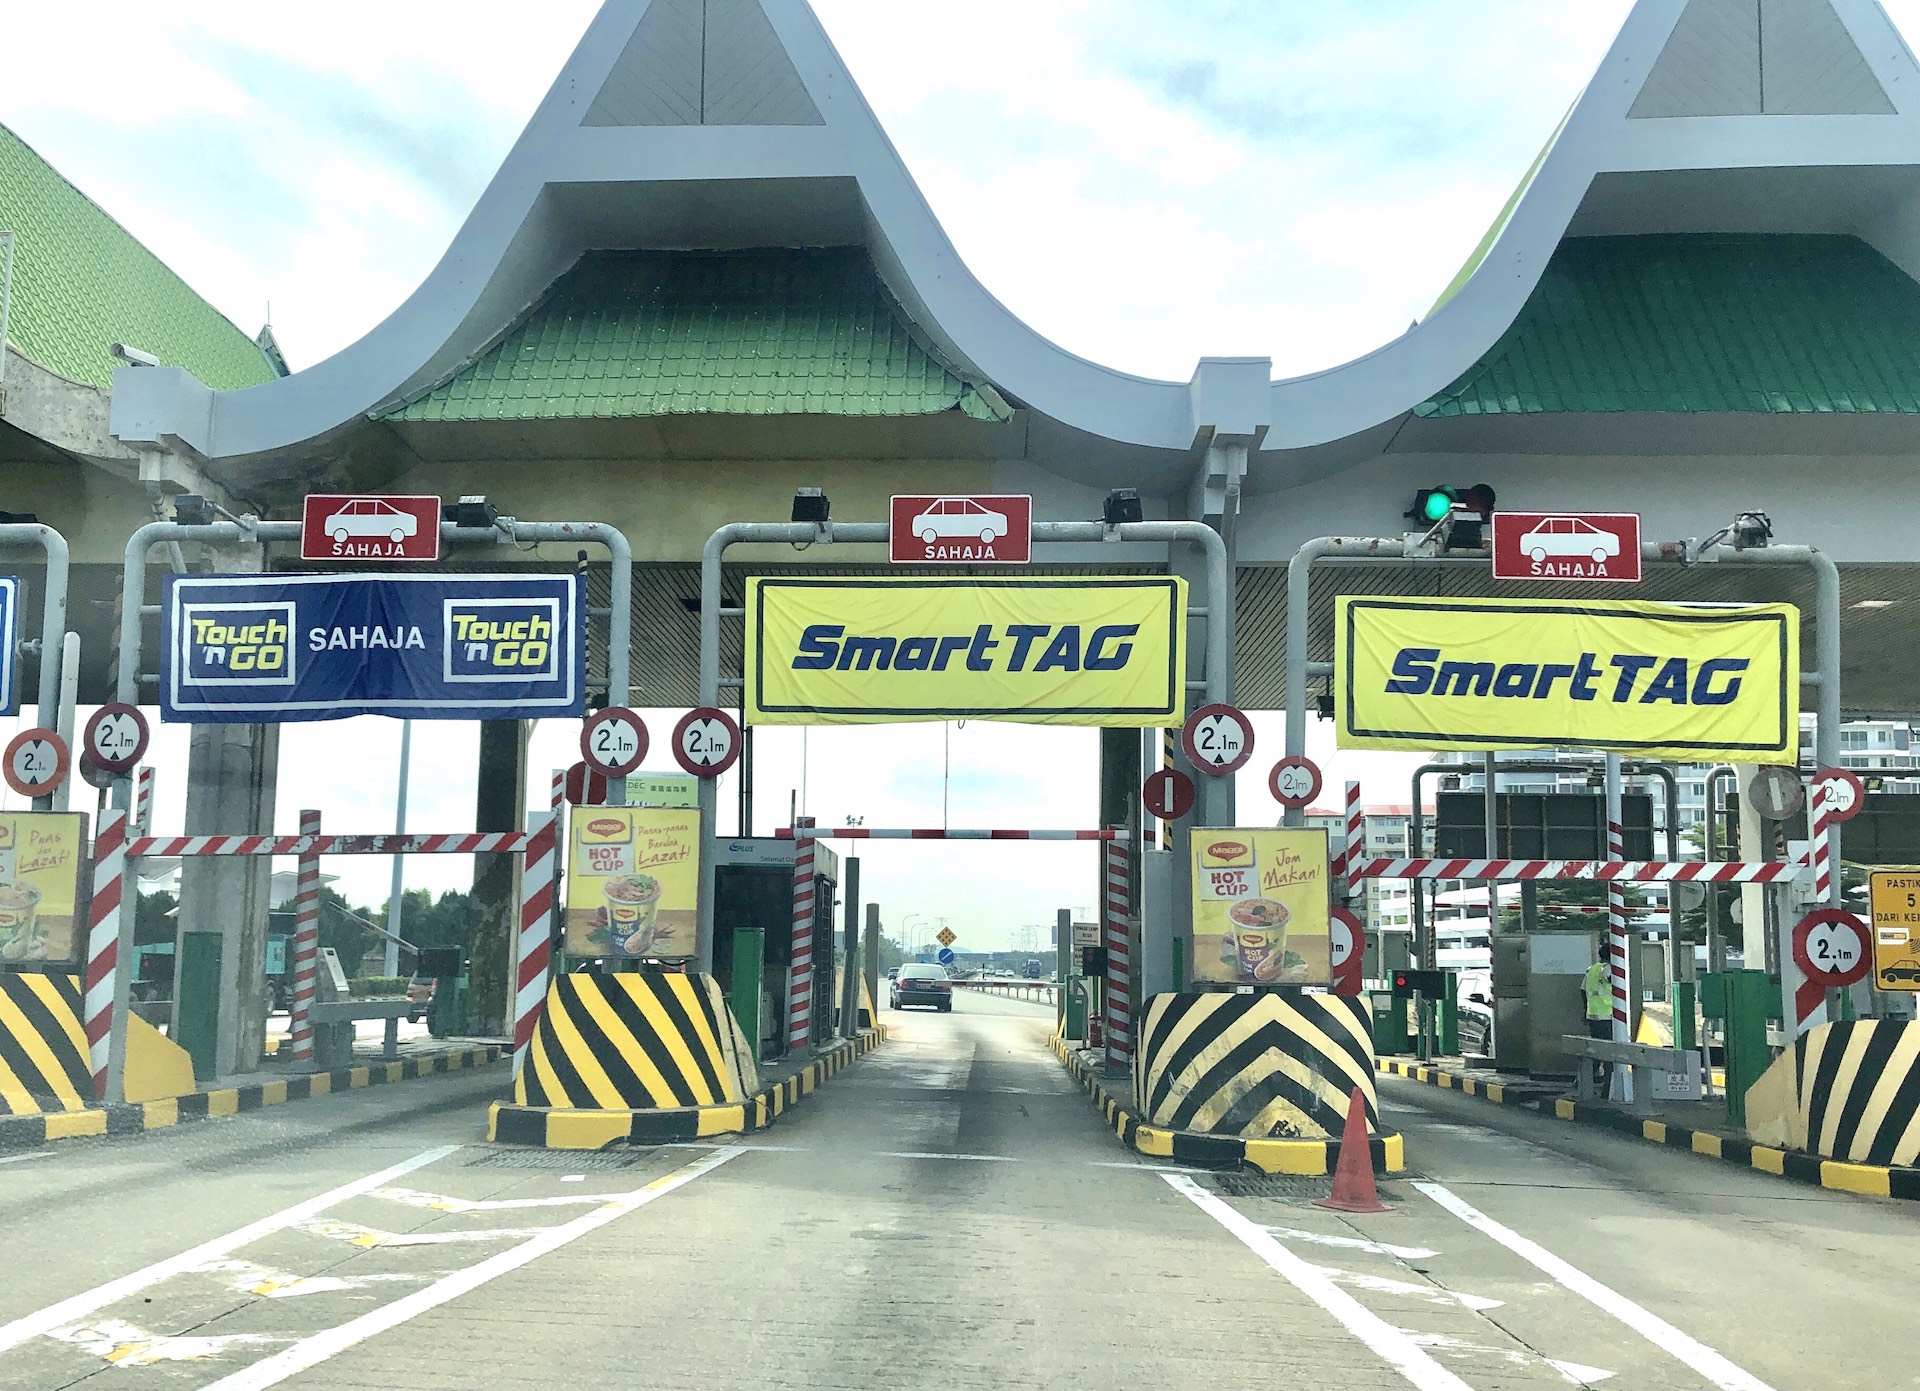 SmartTag lanes abolished